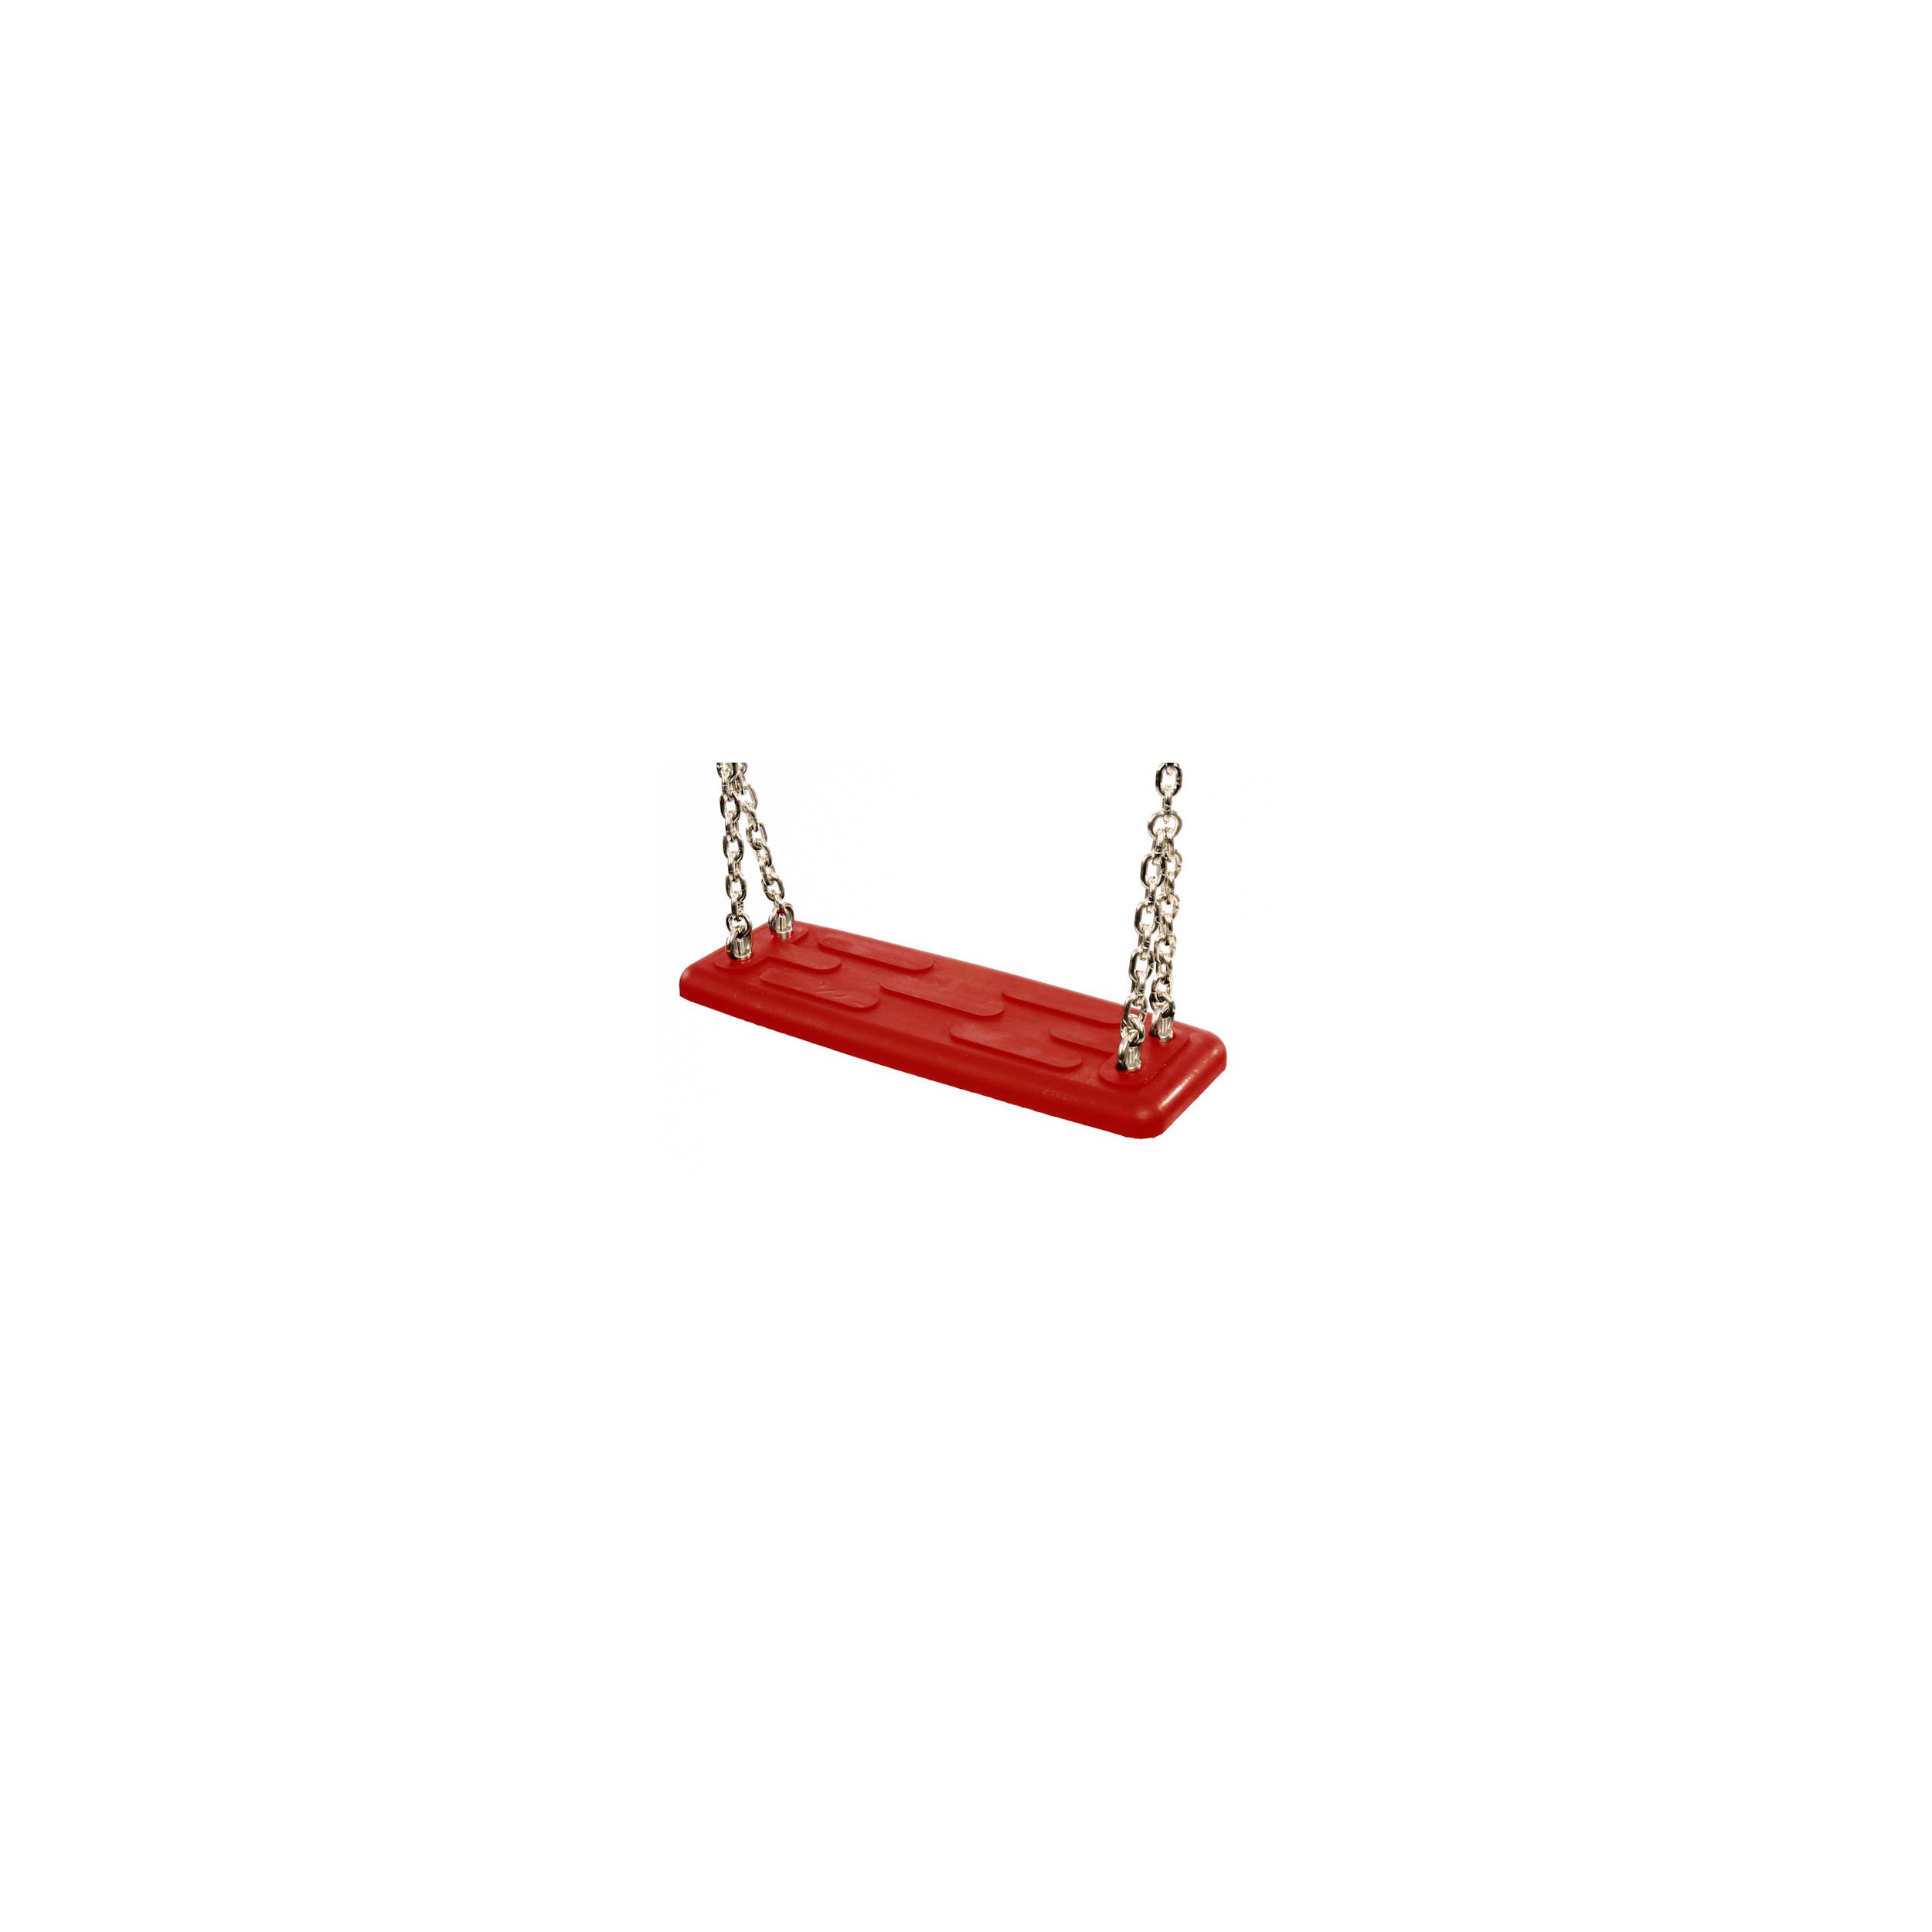 Siège de balançoire de sécurité type 2 rouge Acier inoxydable AISI 316 250 cm